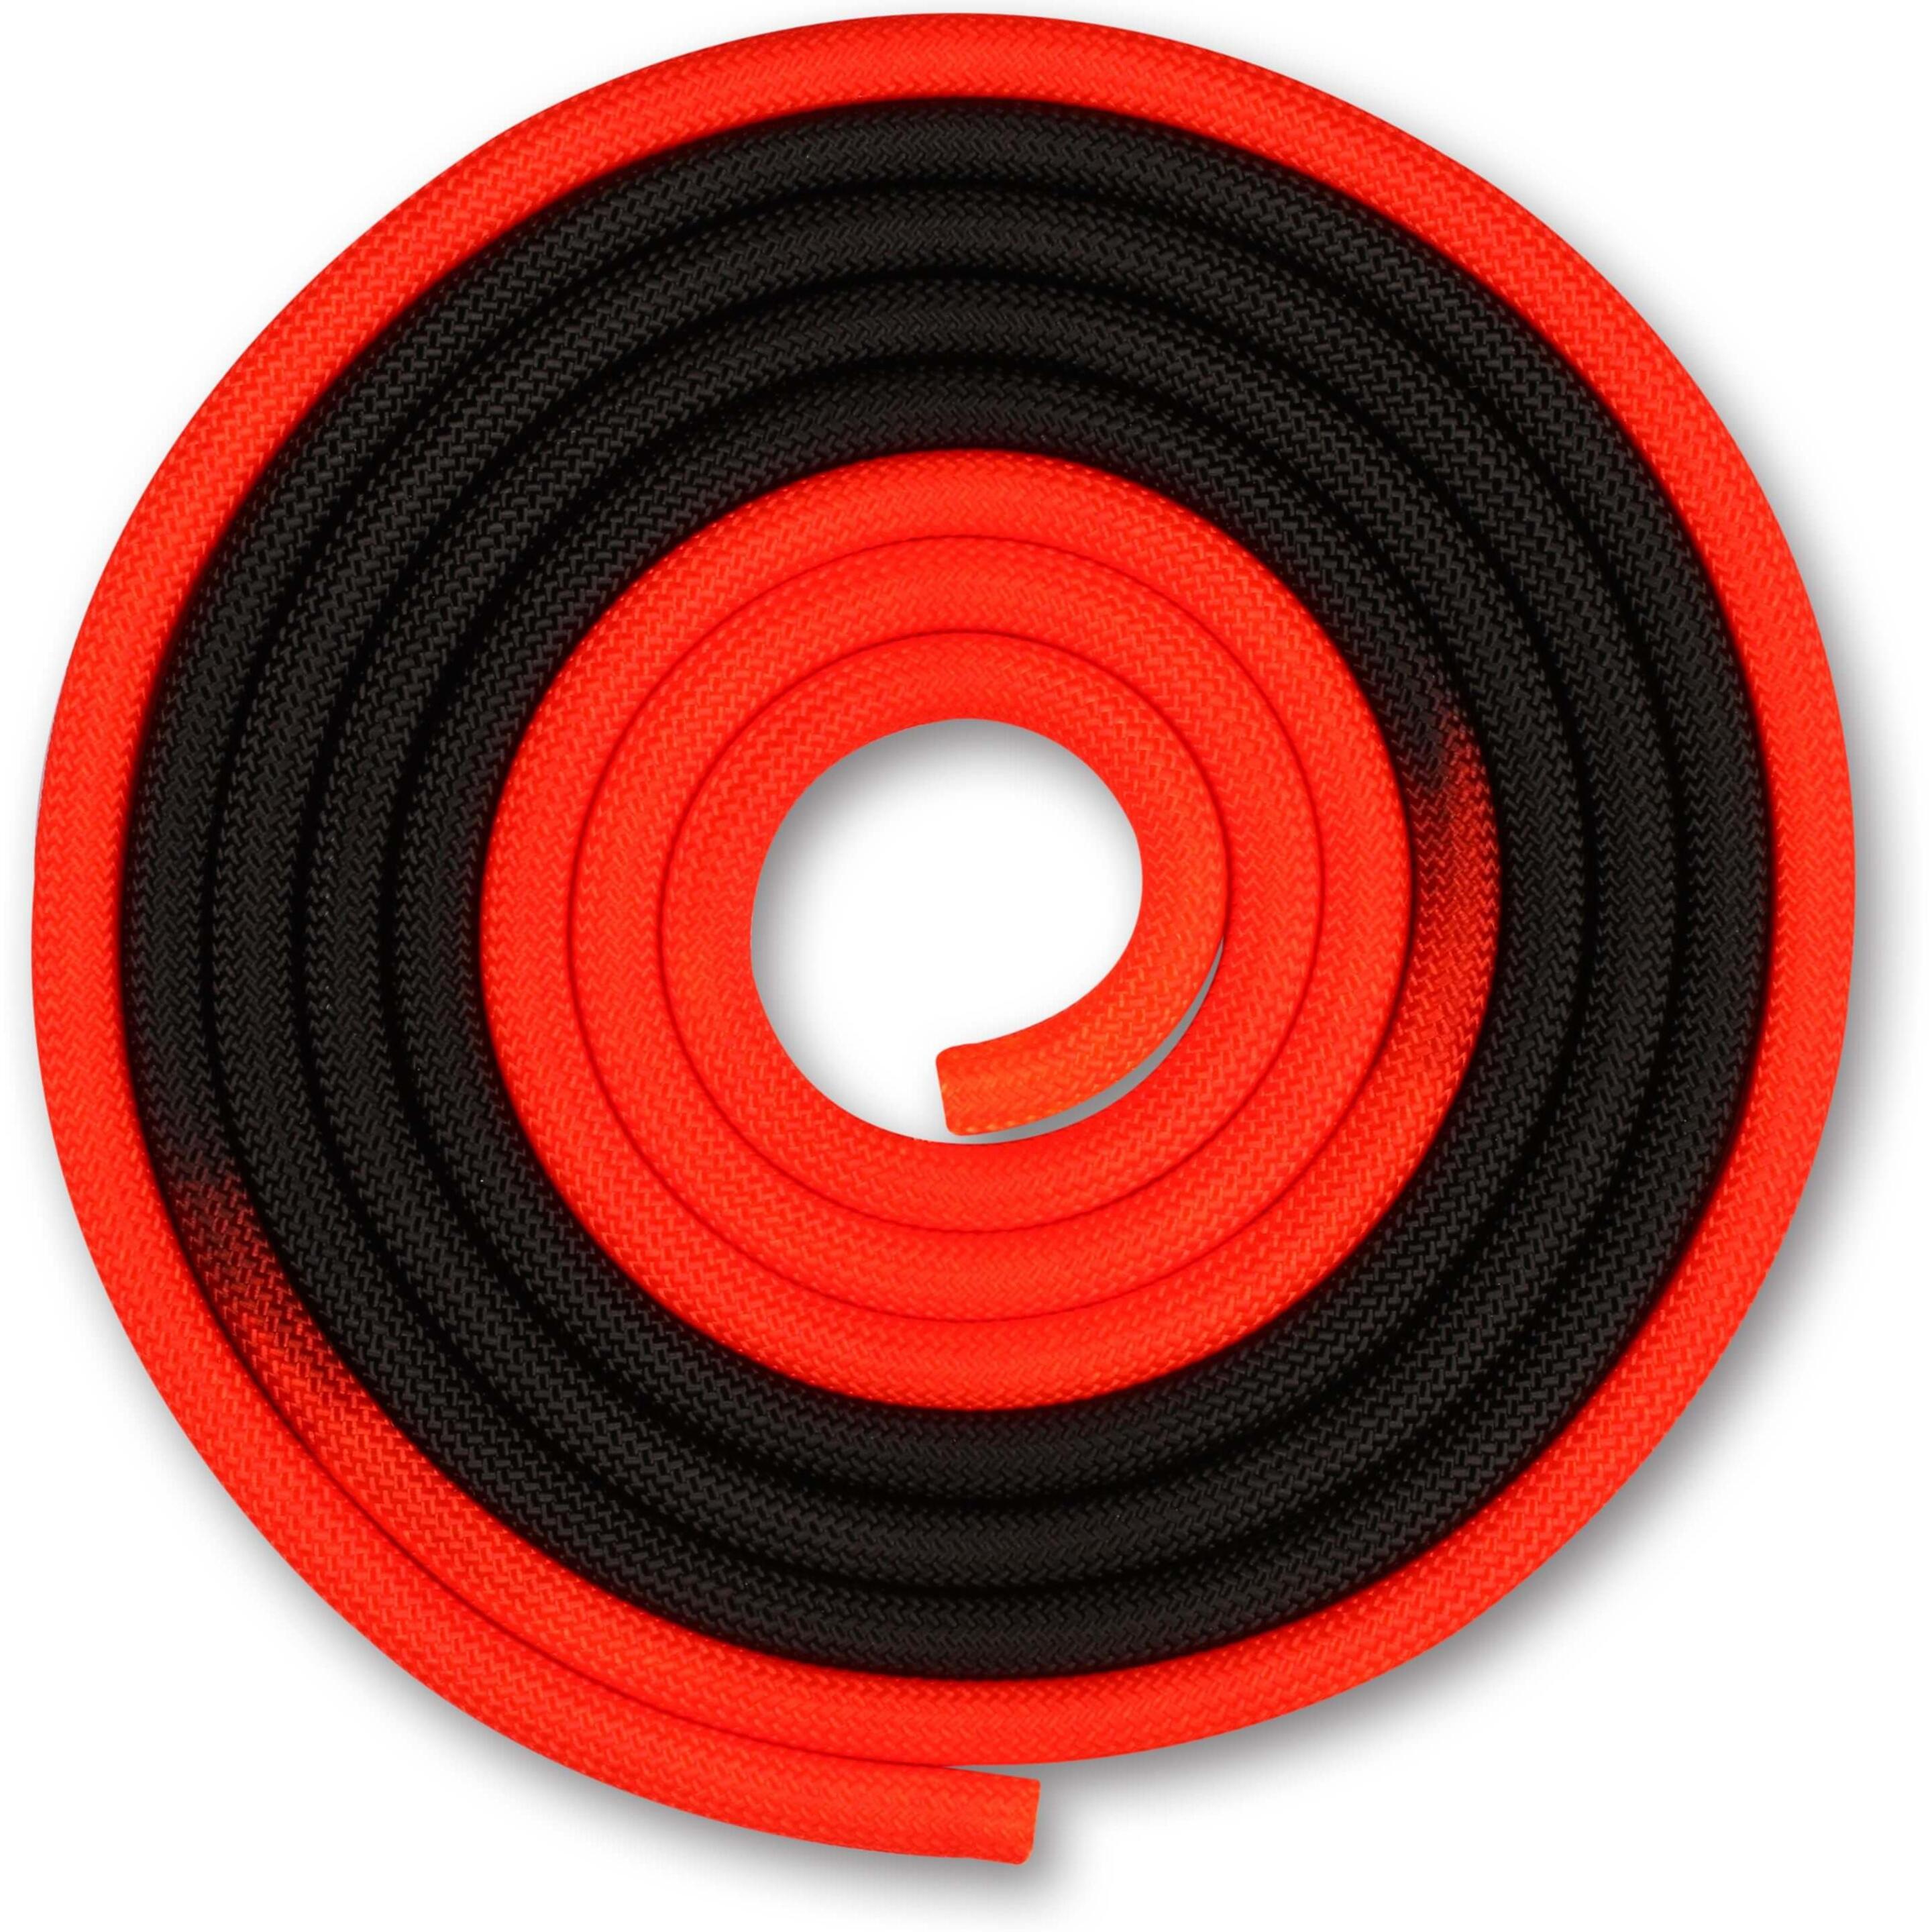 Cuerda Para Gimnasia Rítmica Ponderada 165g Indigo Bicolor 3 M - rojo-negro - 